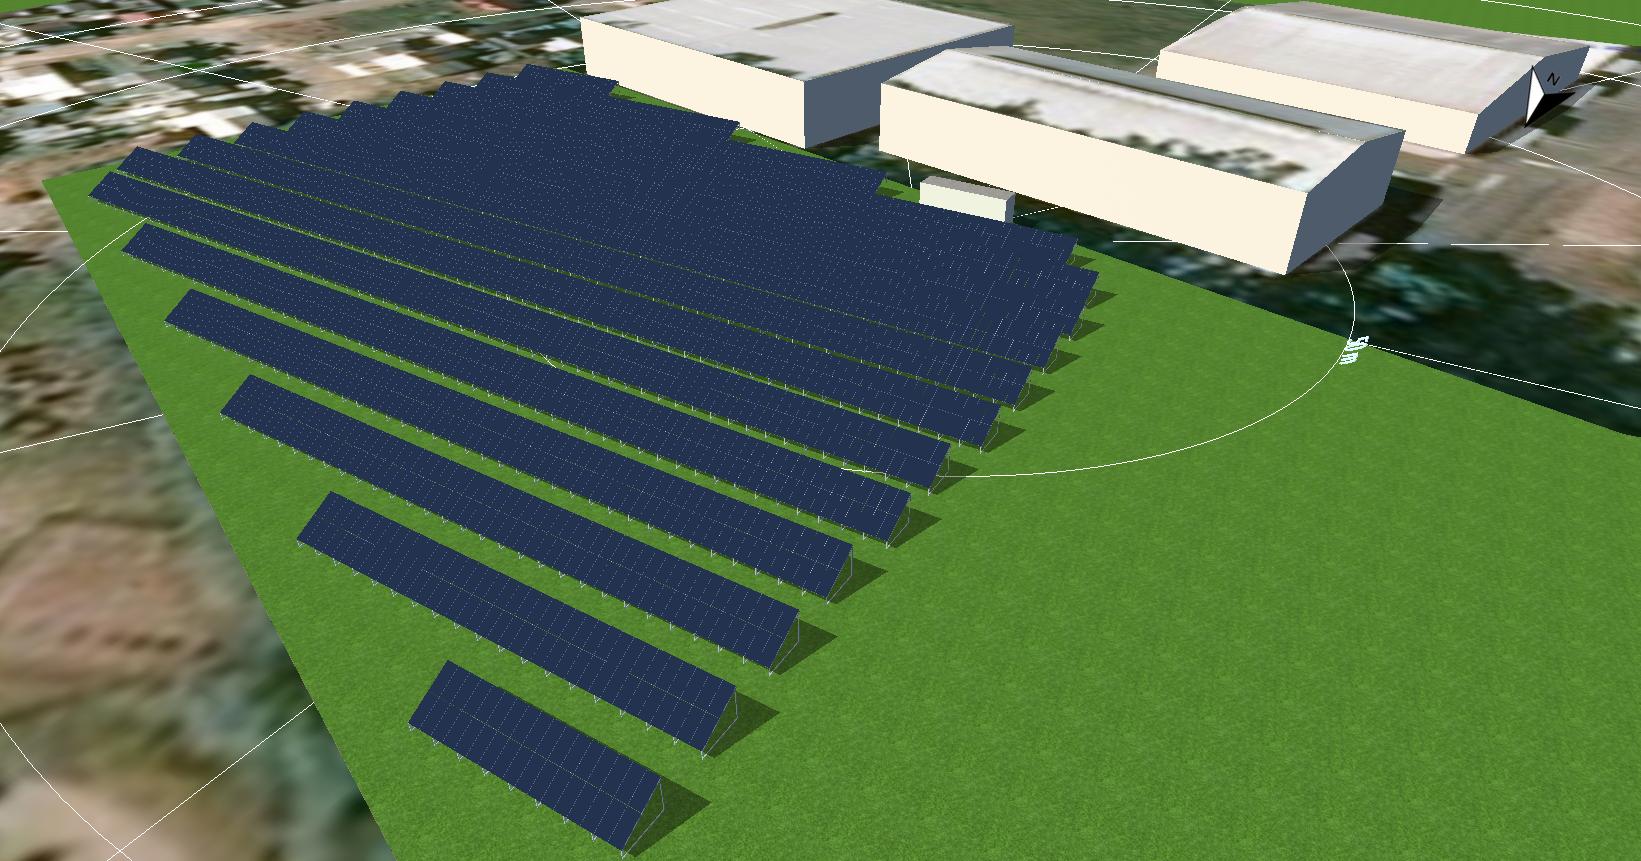 Mercur conclui construção da usina de energia solar fotovoltaica em Santa Cruz